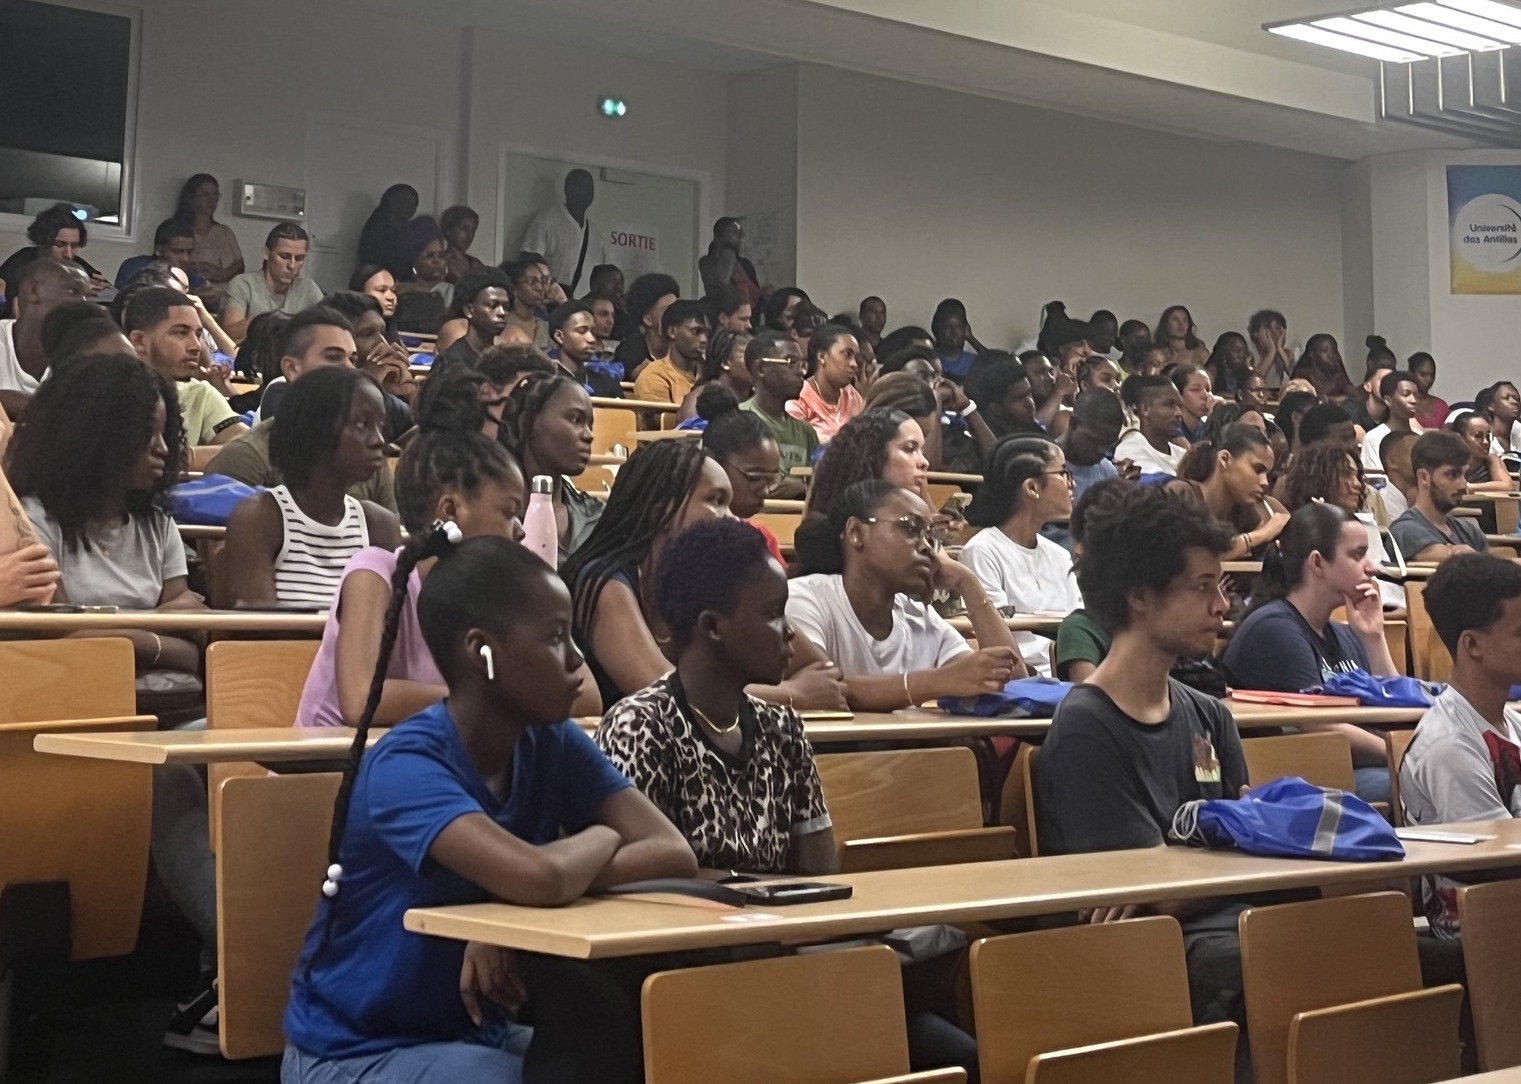     4600 étudiants font leur rentrée à l’Université des Antilles, au Pôle Guadeloupe

